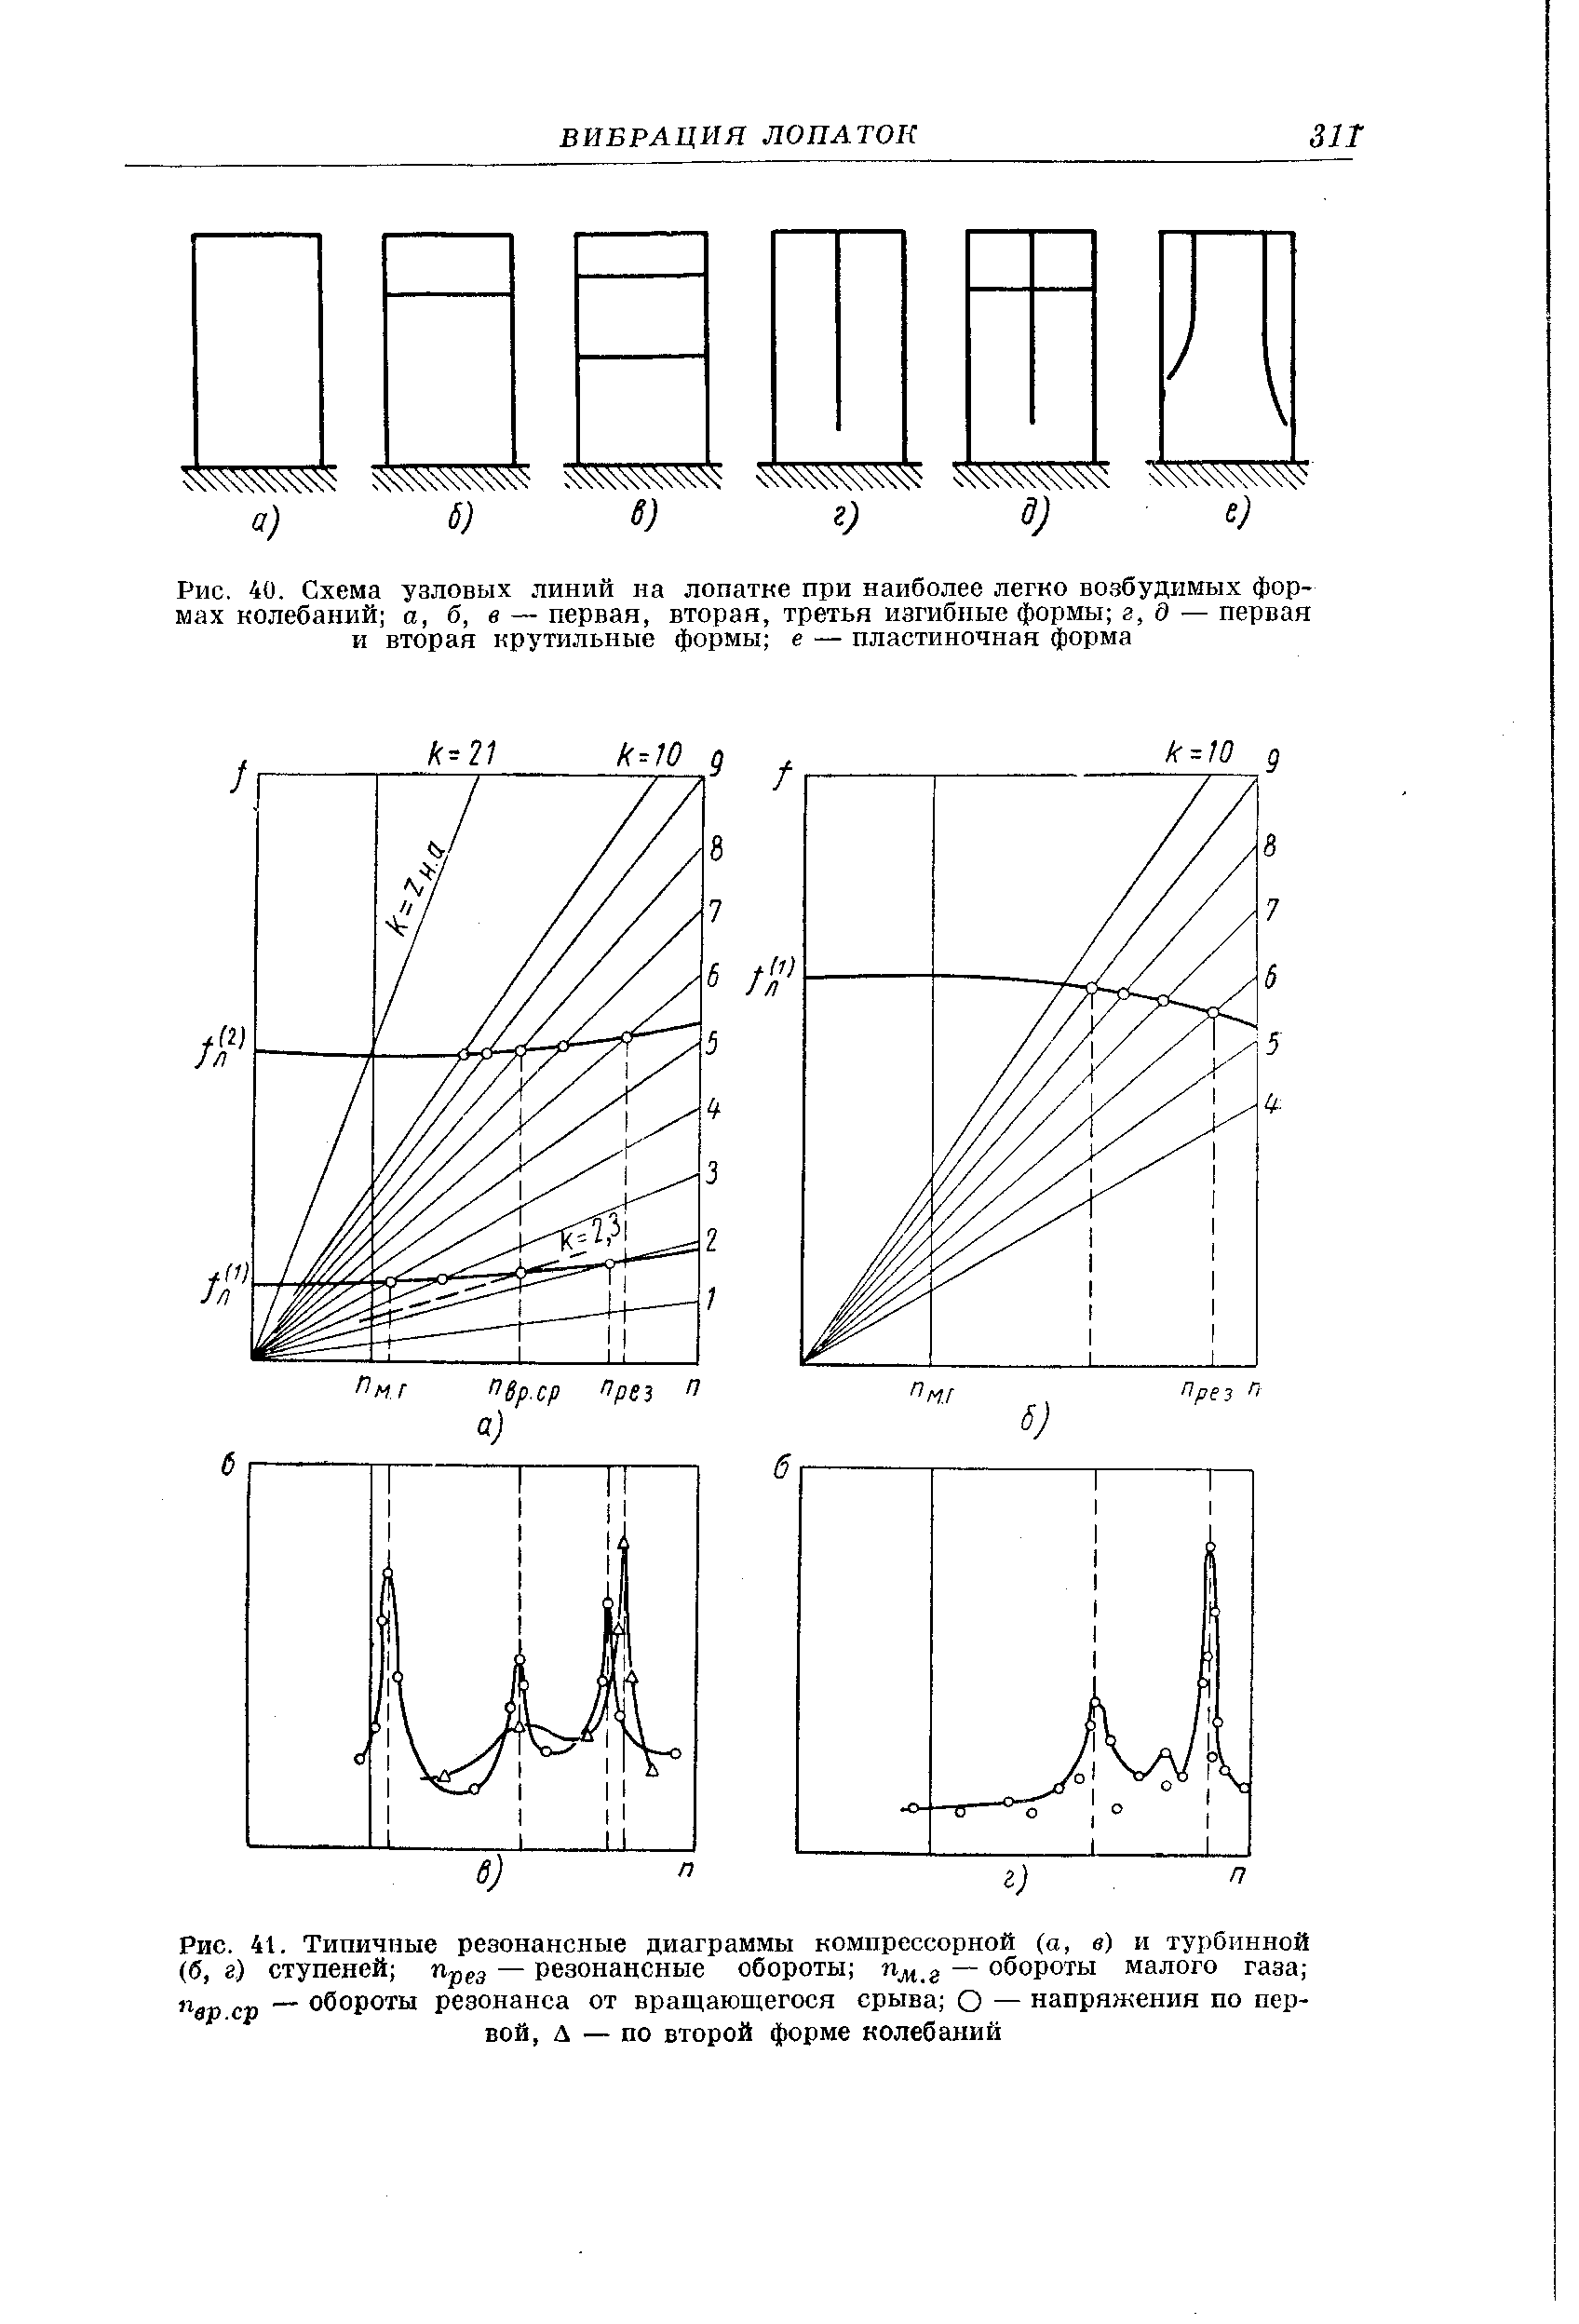 Рис. 41. Типичные резонансные диаграммы компрессорной (а, в) и турбинной (б, г) ступеней — резонансные обороты — обороты малого газа 
